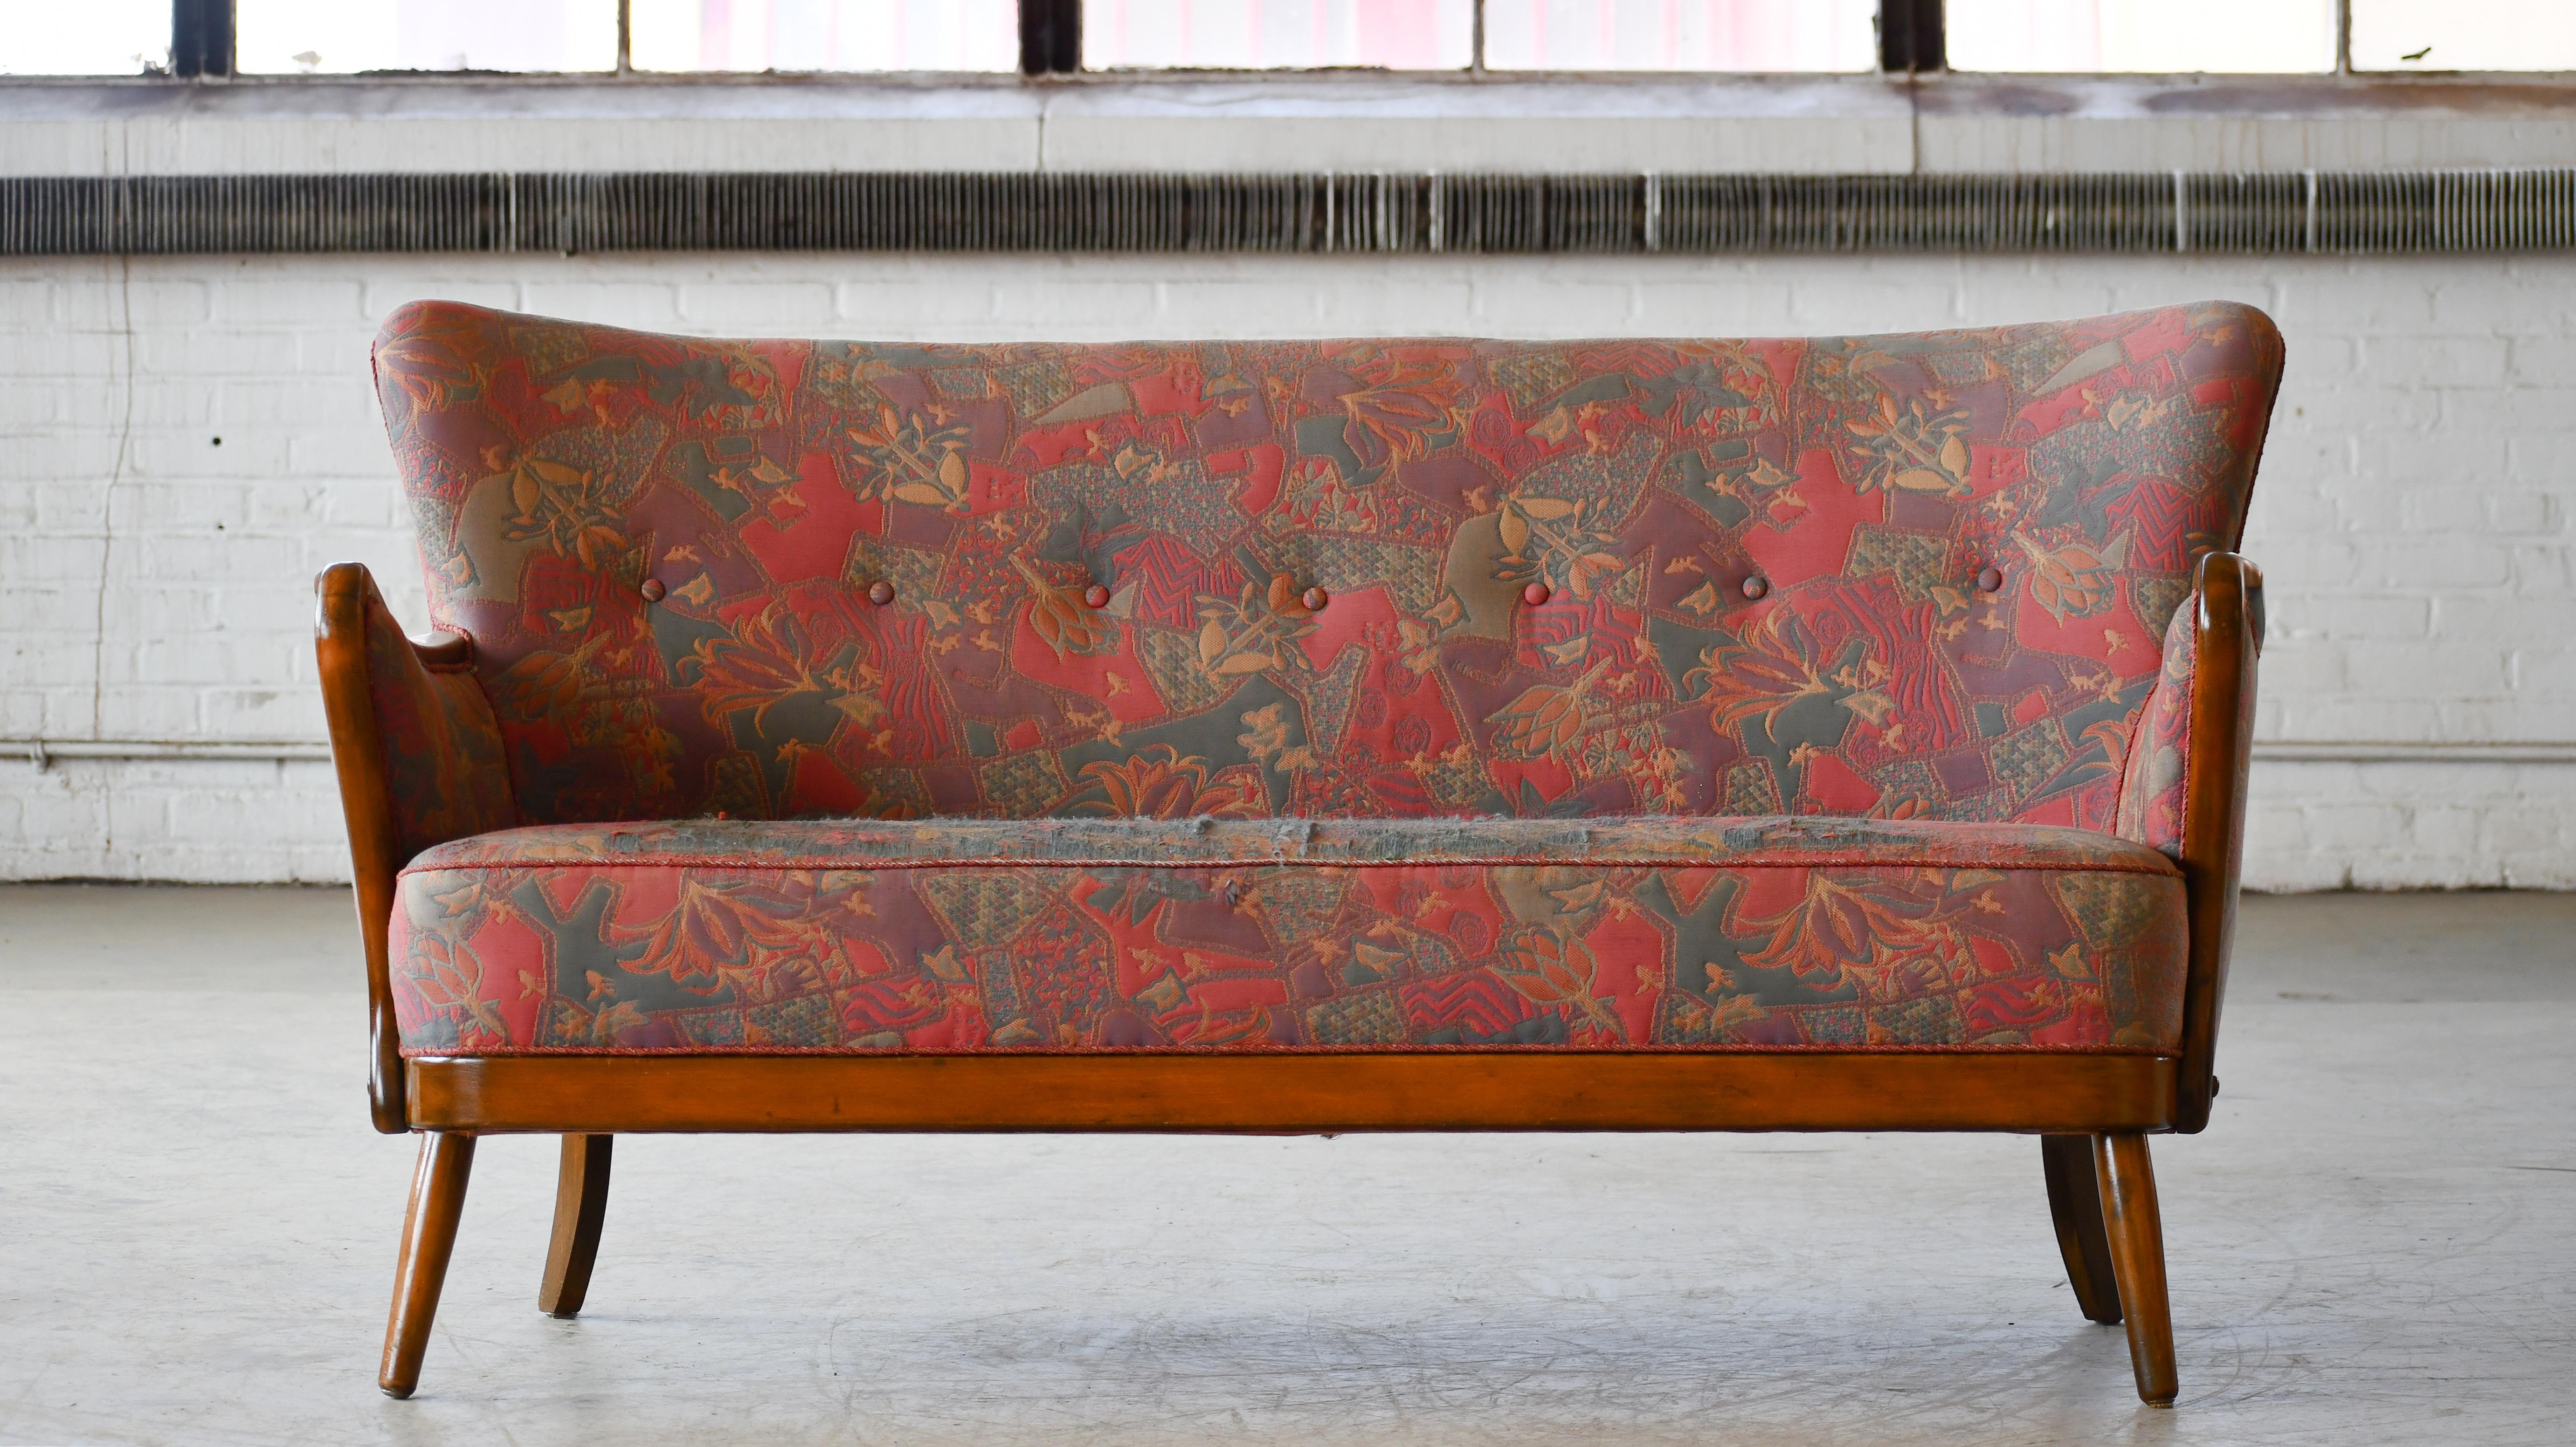 Fantastique canapé des années 1940 conçu par Alfred Christensen dans son style caractéristique  fabriqué par Slagelse Mobelvaerk dans les années 1940.  De belles lignes raffinées avec des accoudoirs incurvés, des ressorts hélicoïdaux dans l'assise